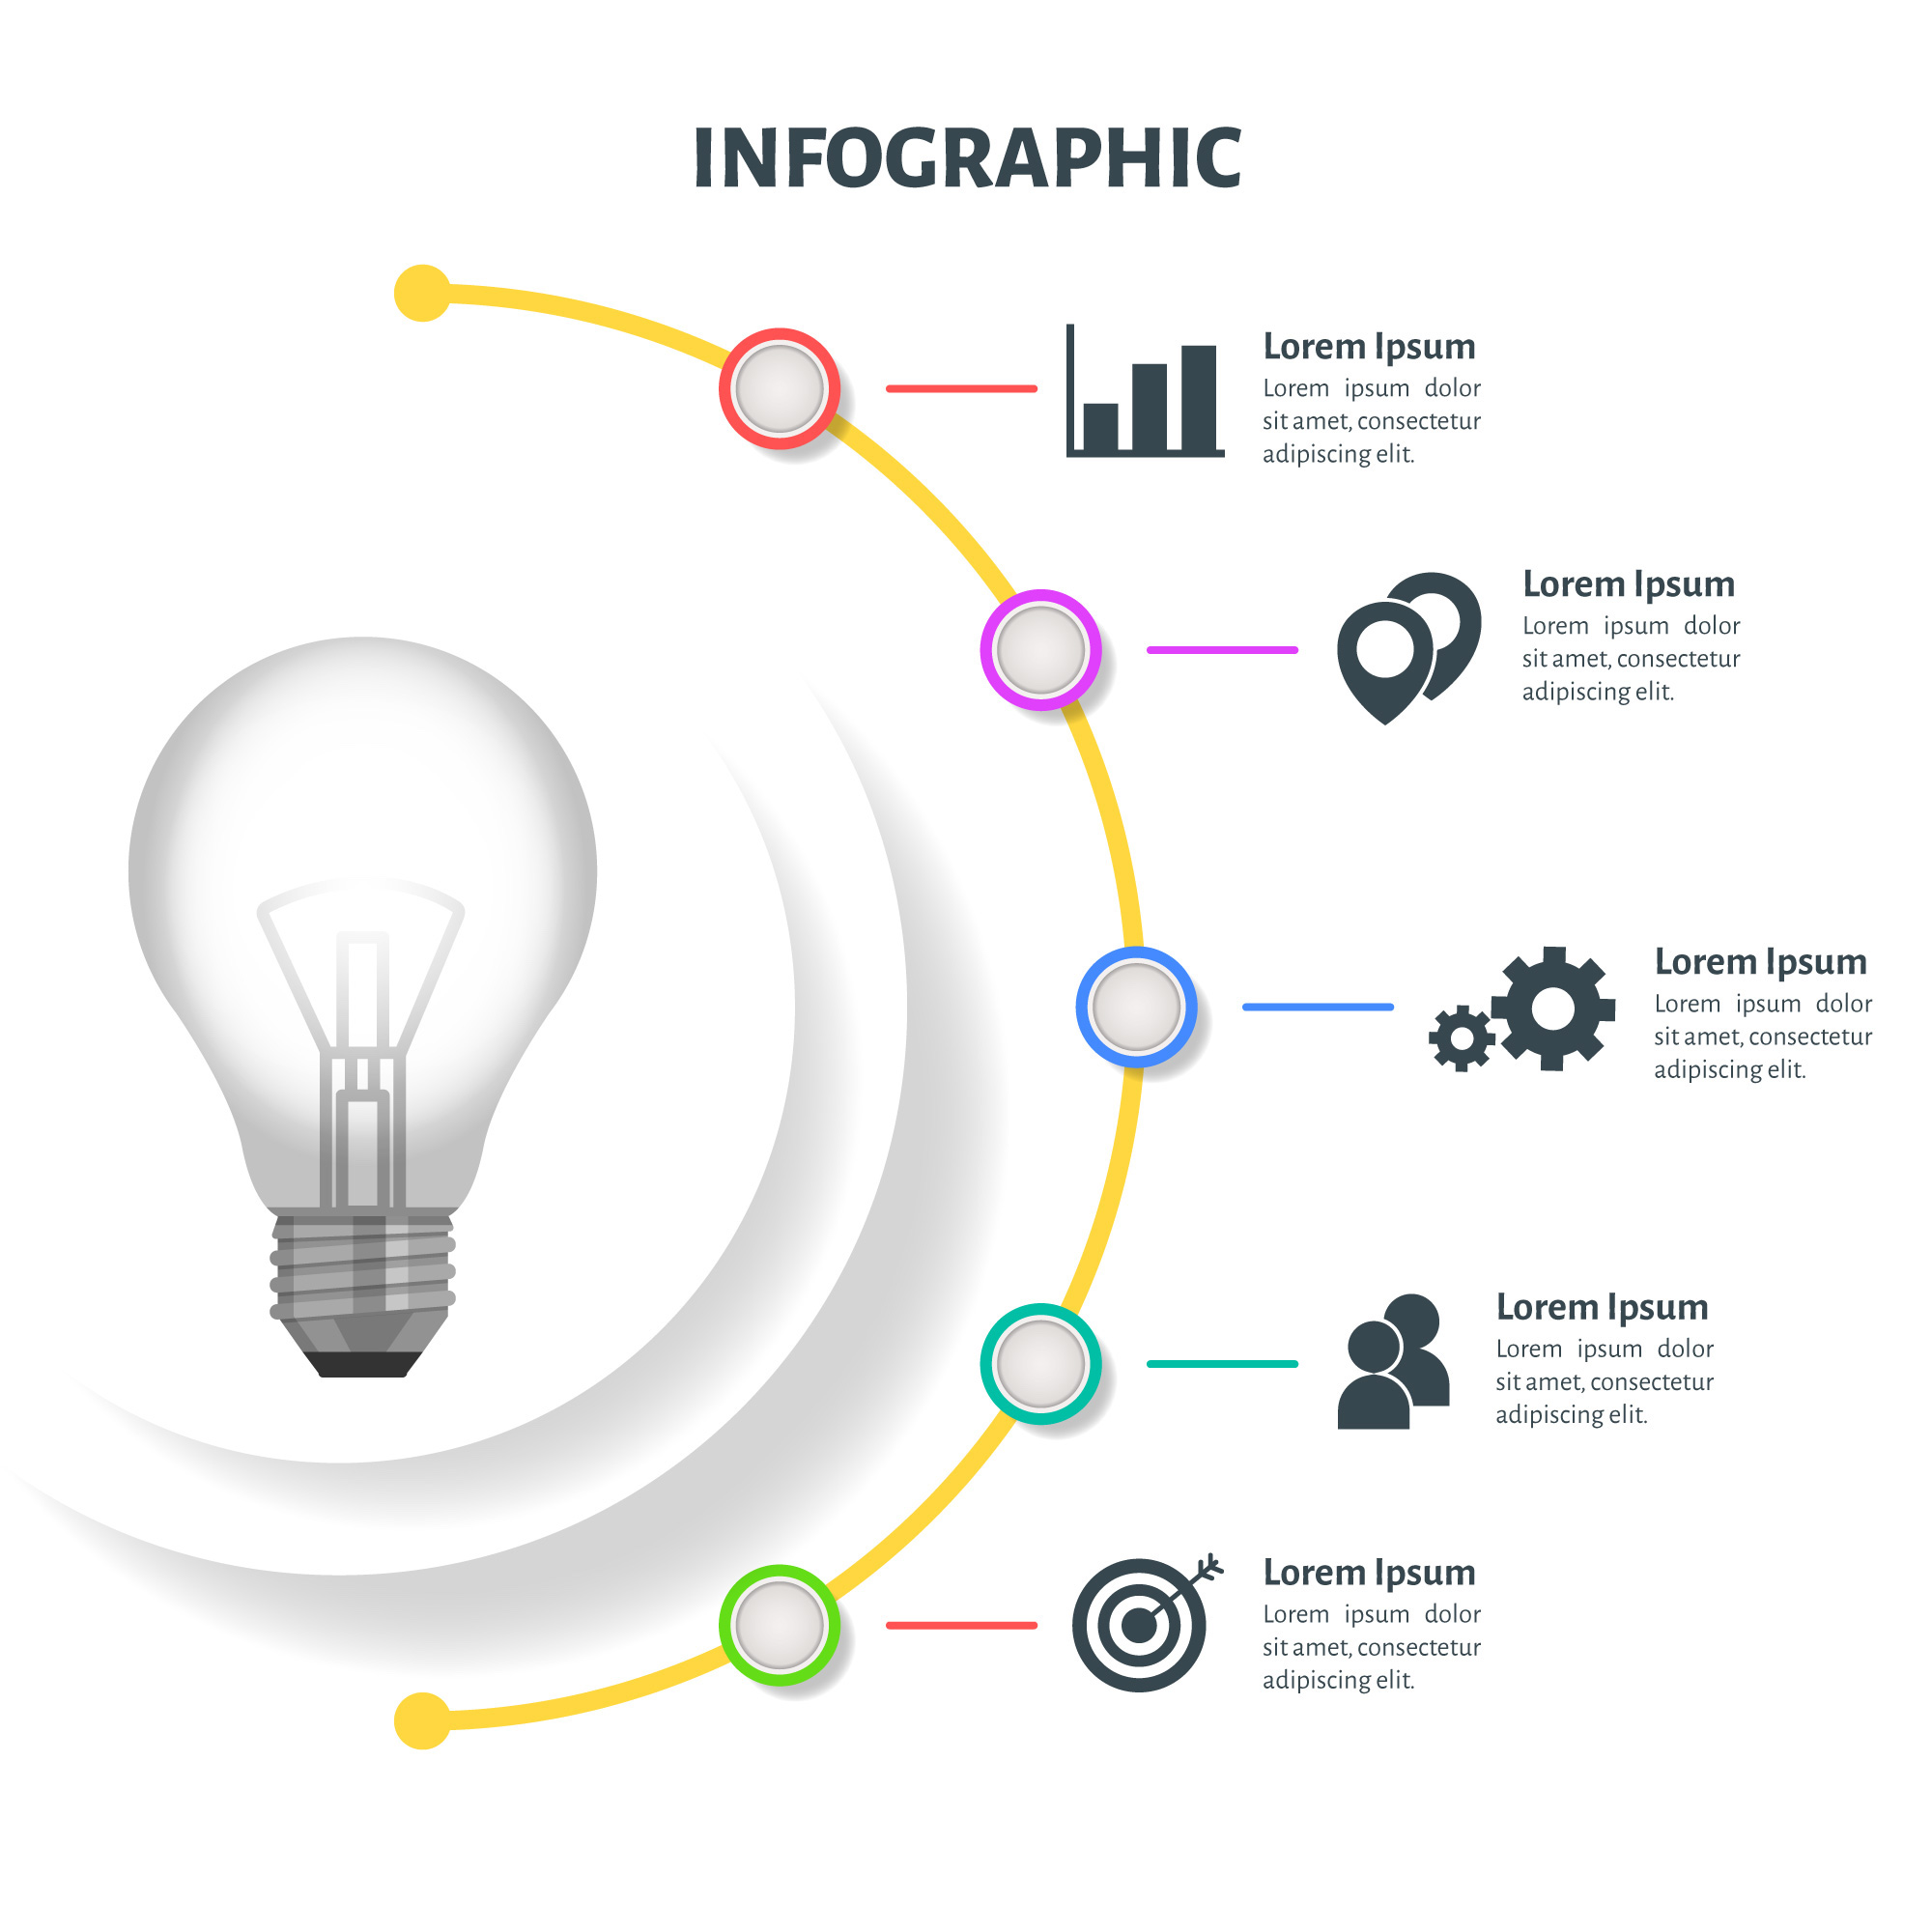 Recuerda los elementos de una infografía a la hora de diseñar una, estos gráficos son útiles para mostrar información de manera creativa y sencilla.